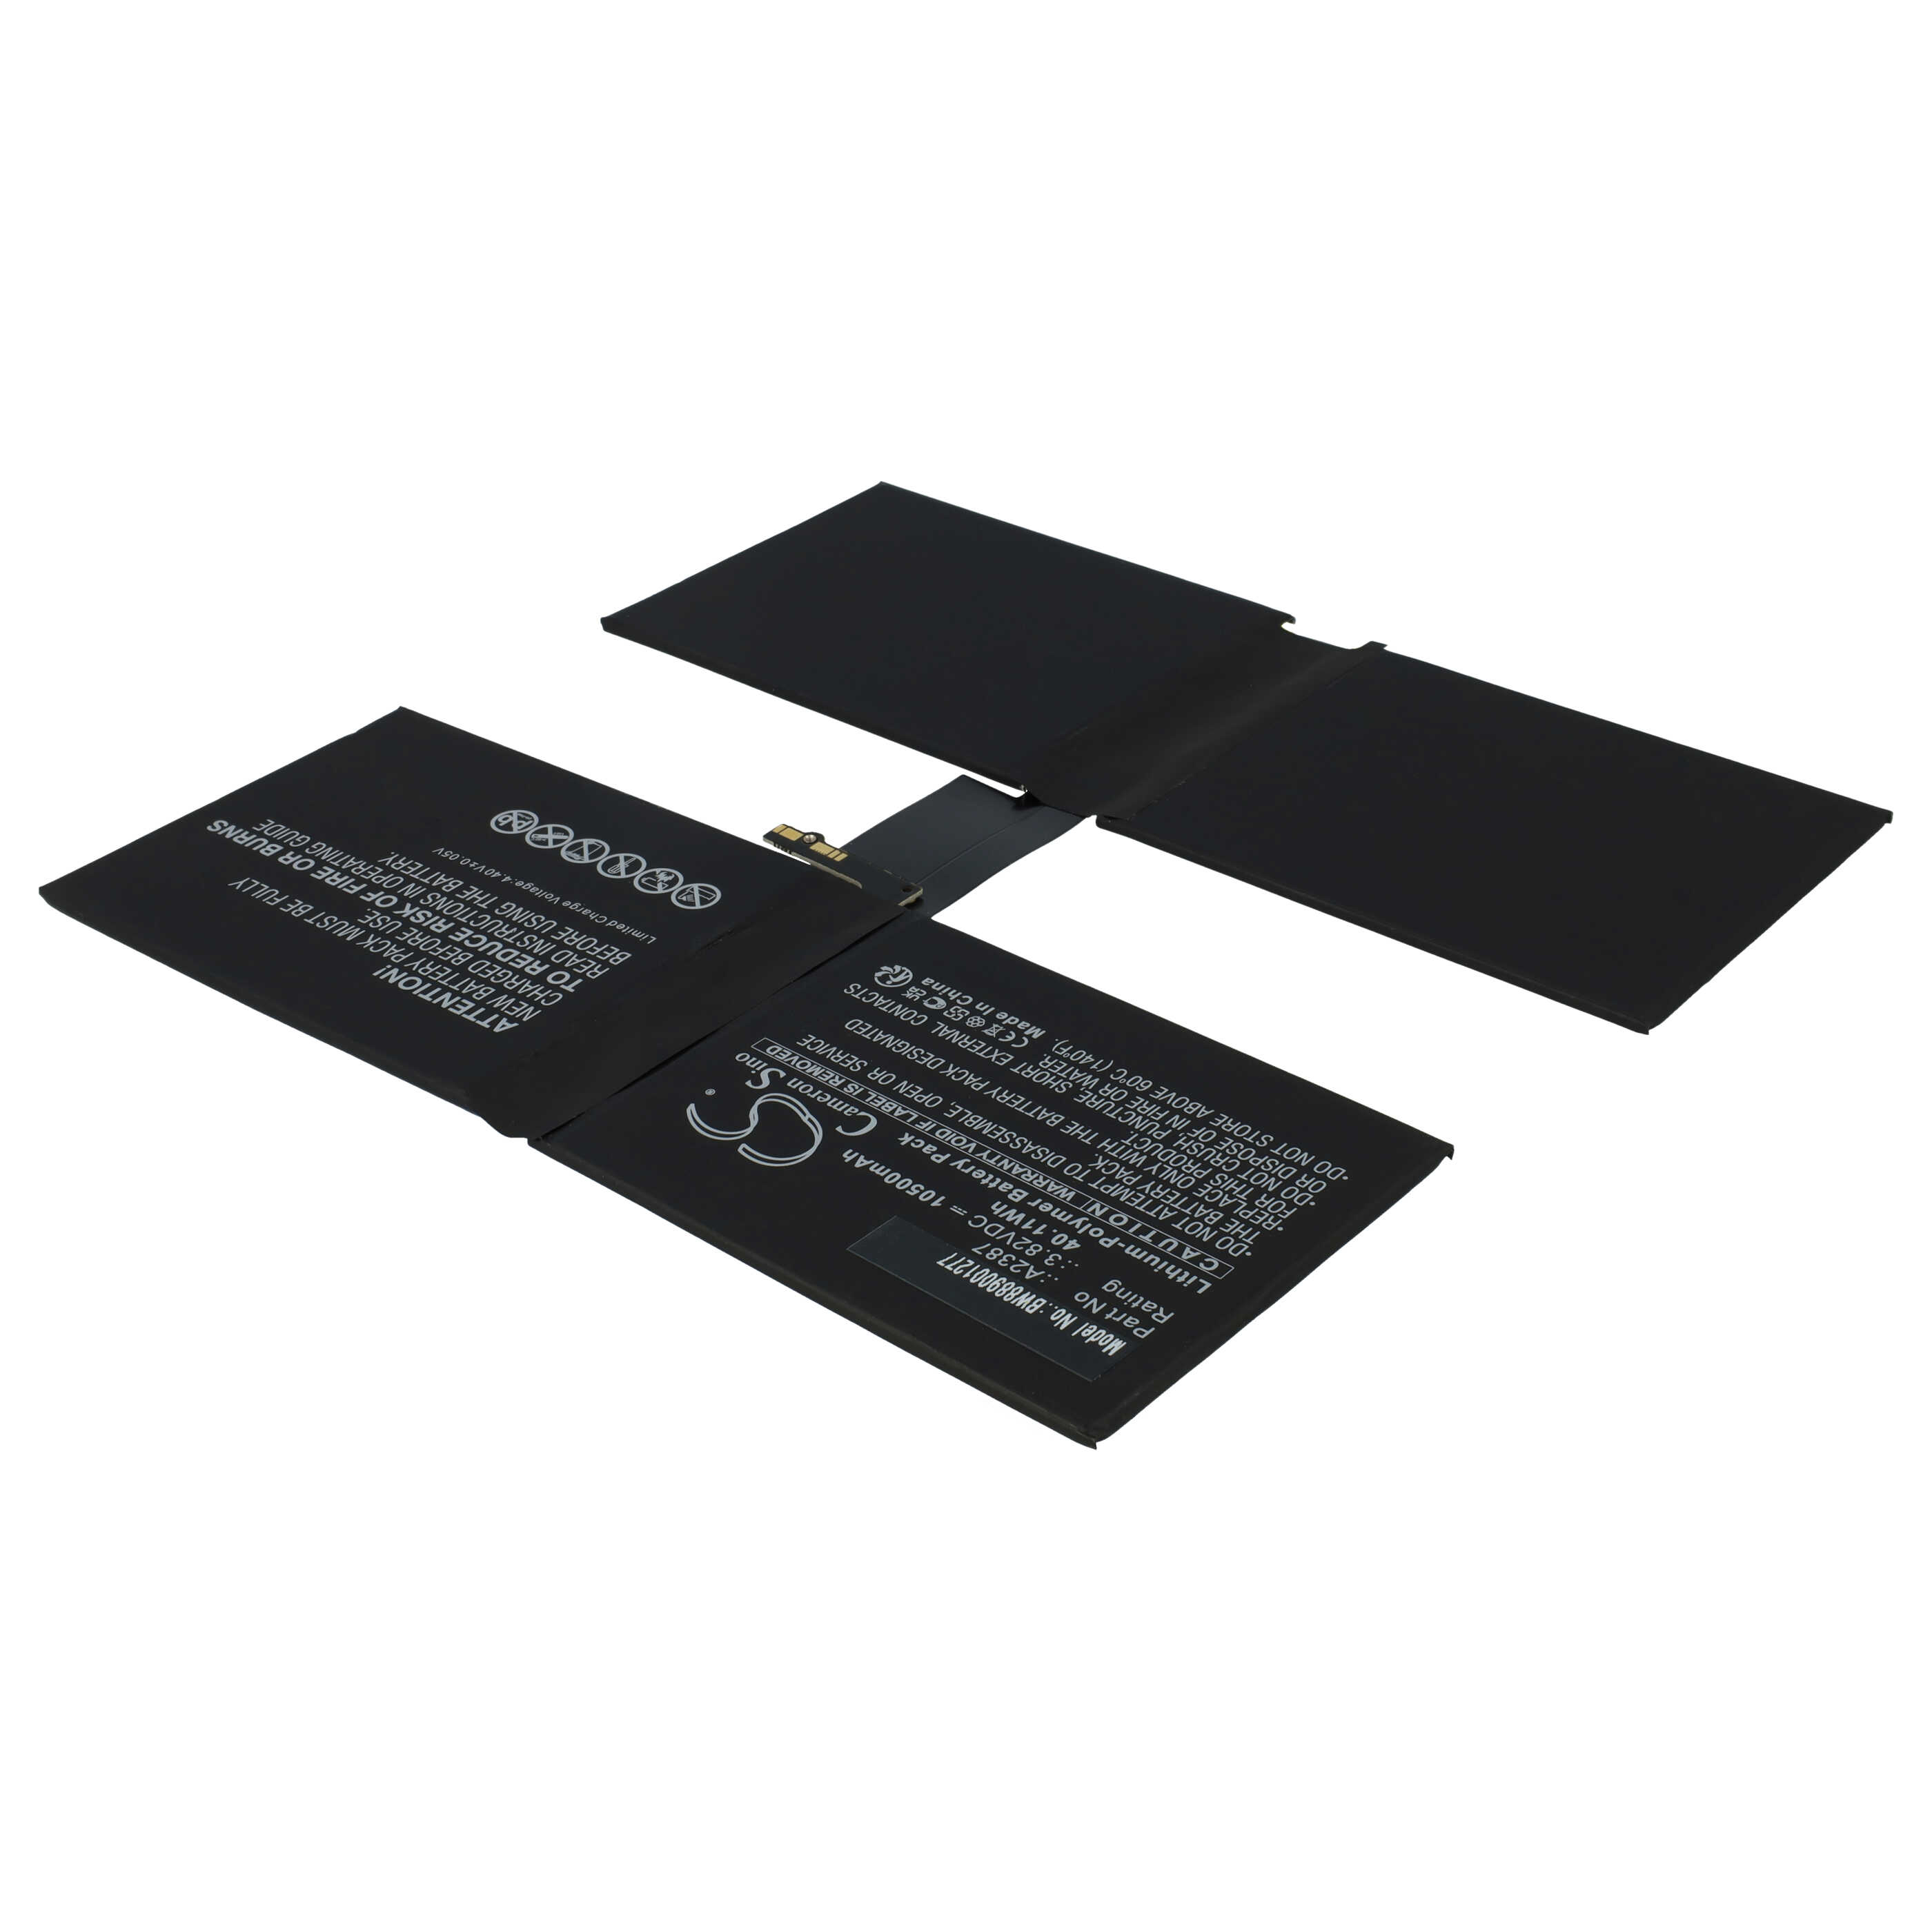 Batería reemplaza Apple A2387 para tablet, Pad Apple - 10500 mAh 3,82 V Li-poli